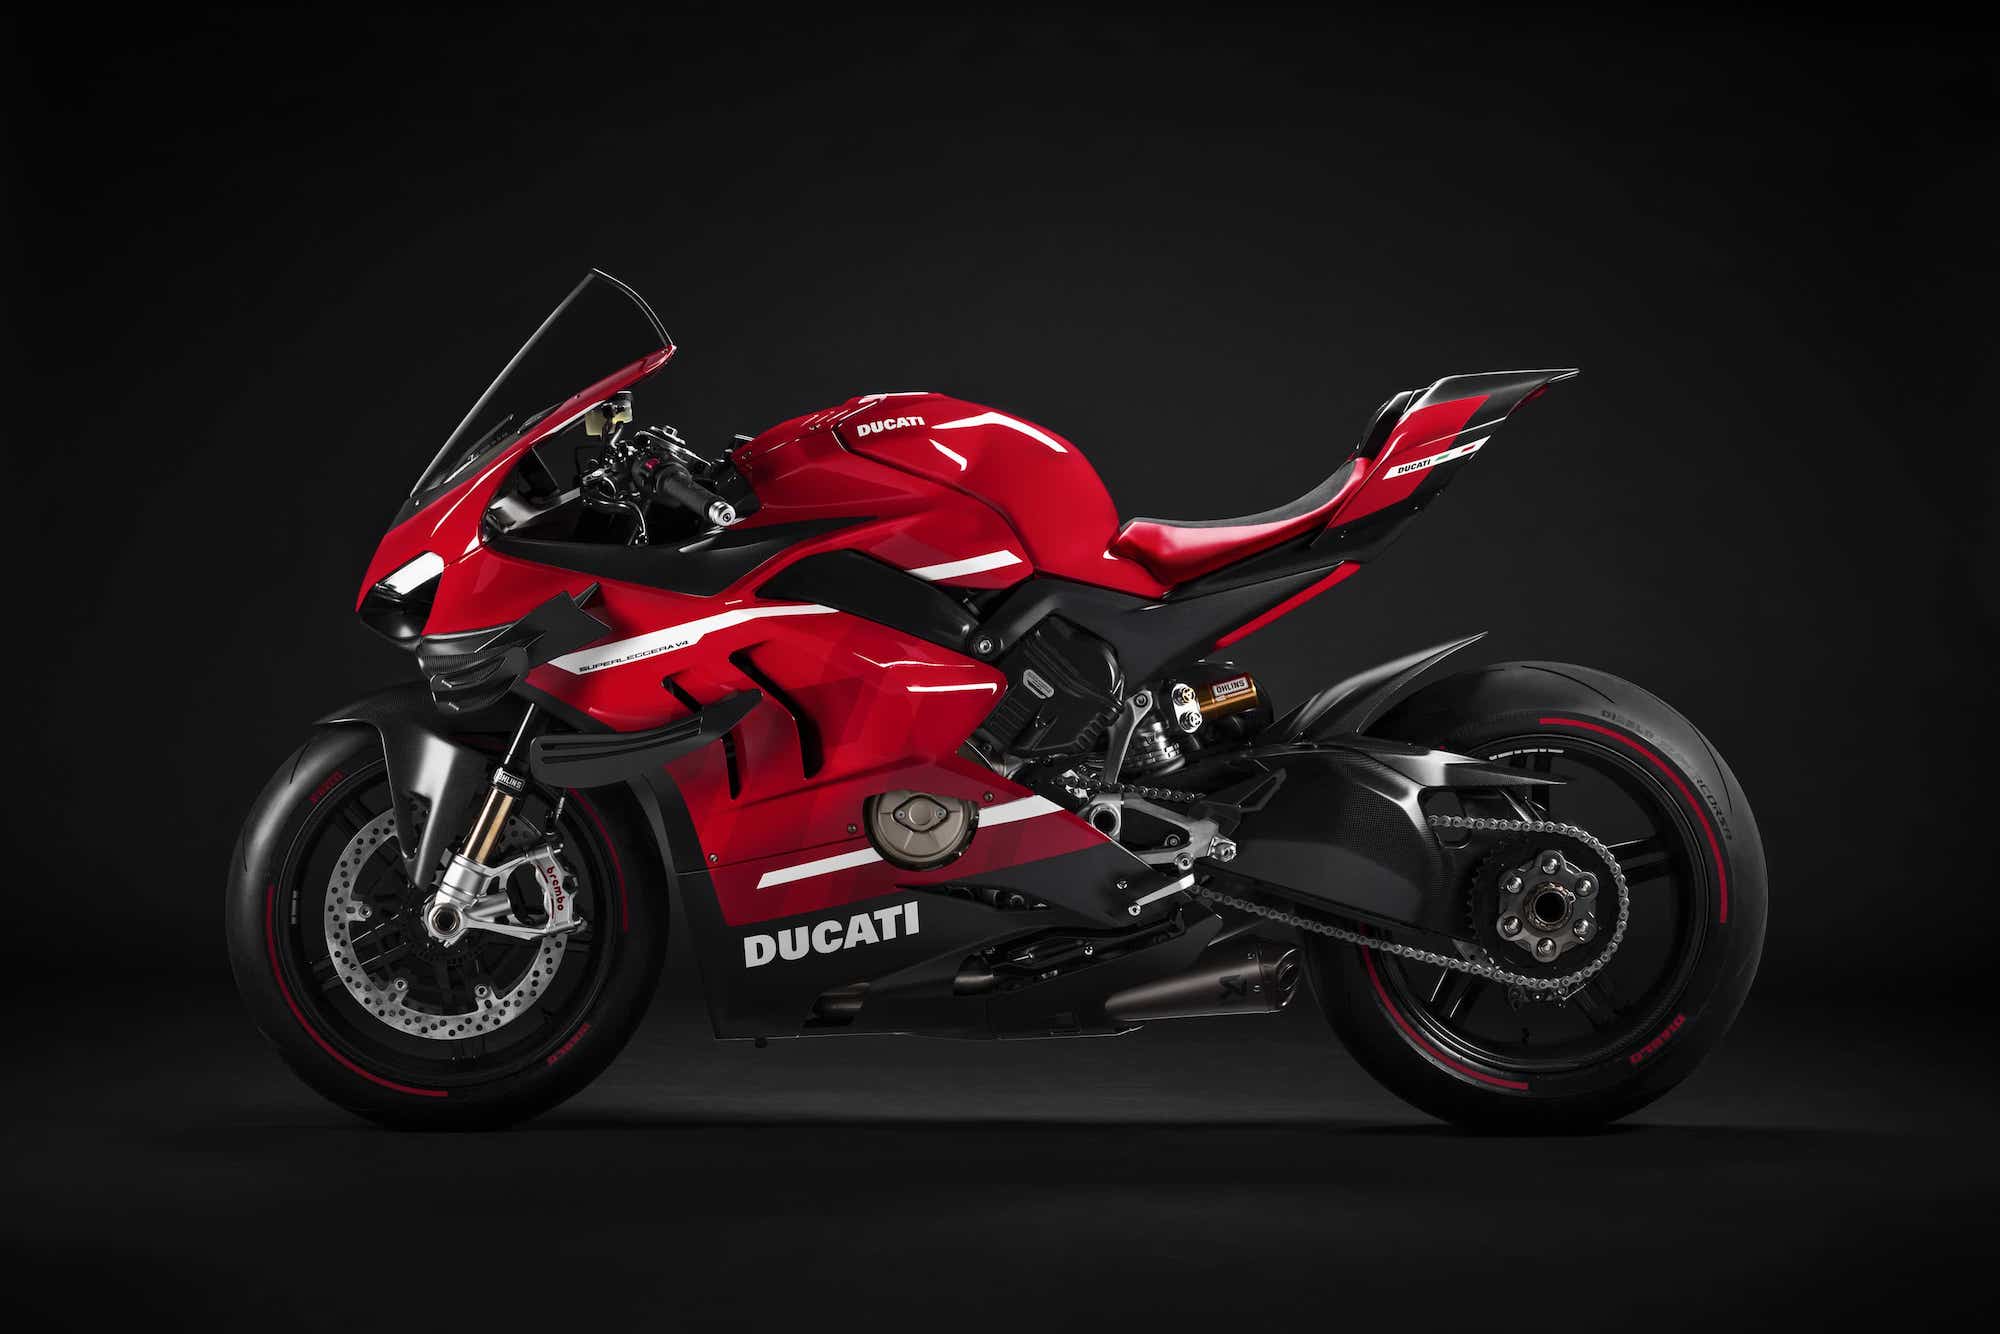 Ducati 最高出力234馬力、乾燥重量159kgのスーパーレッジェーラを発表 | 気になるバイクニュース